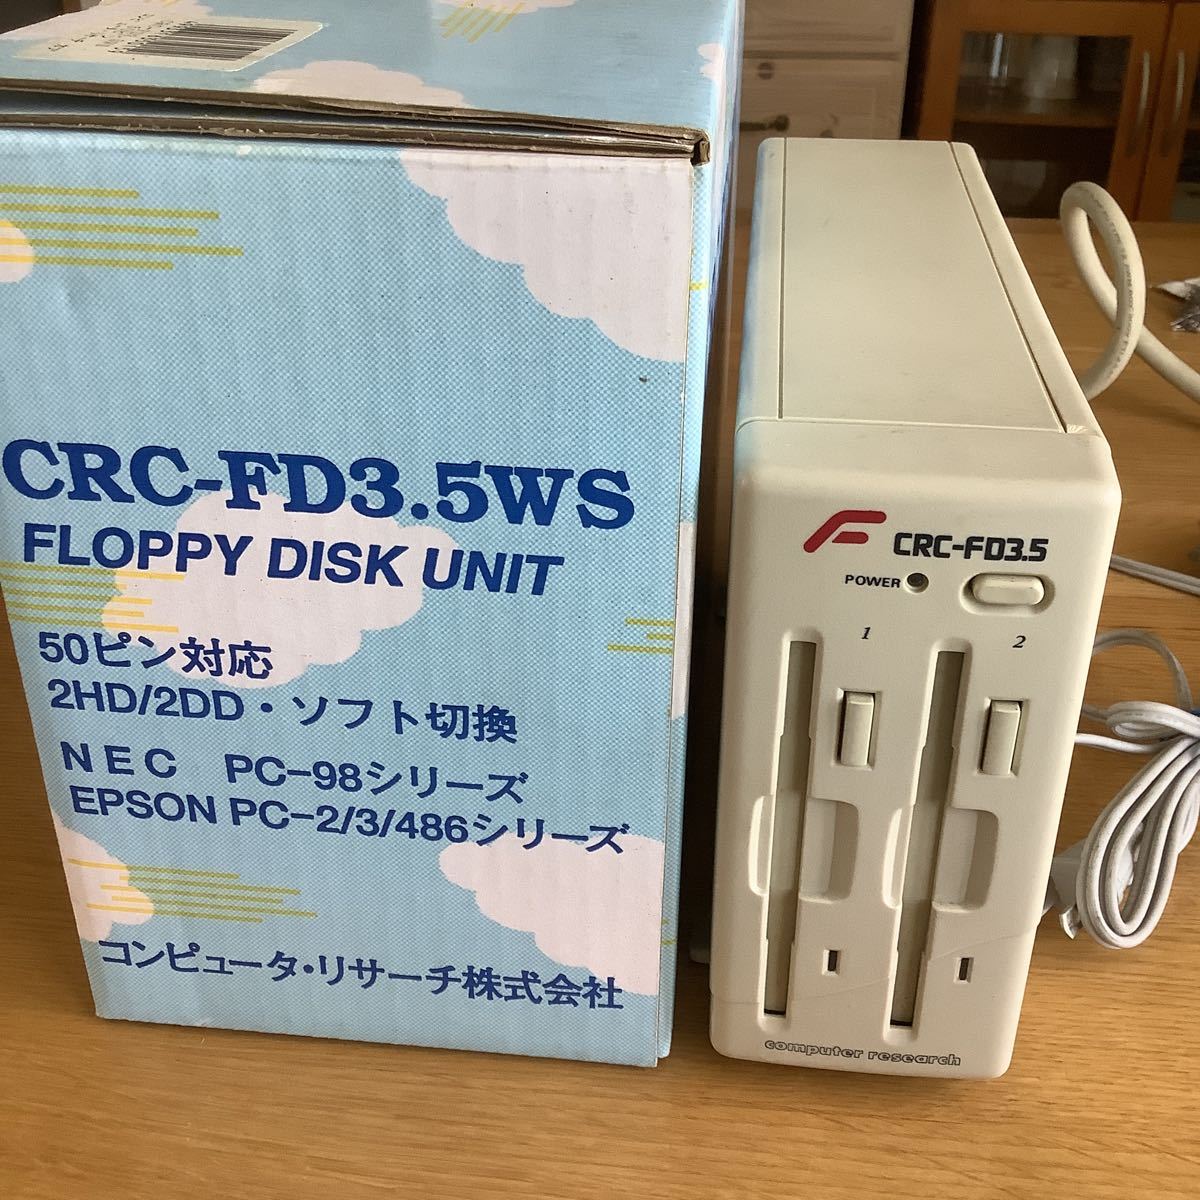 pc98 フロッピーディスクドライブ 3.5インチ 外付け CRC-FD3.5WS PC-98